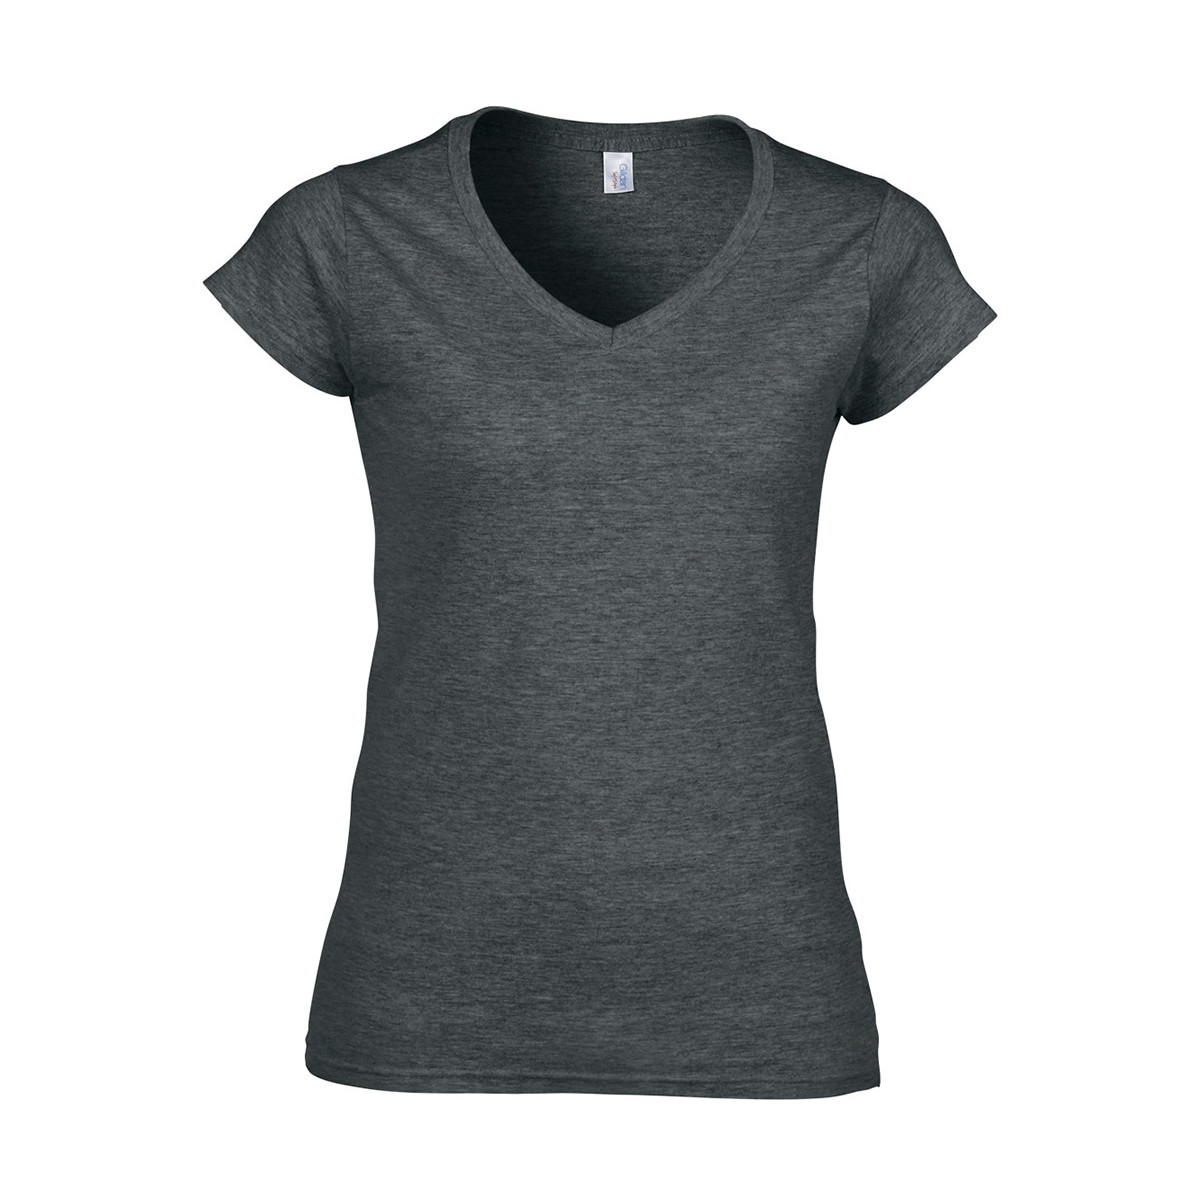 Abbigliamento Donna T-shirt maniche corte Gildan Soft Style Grigio